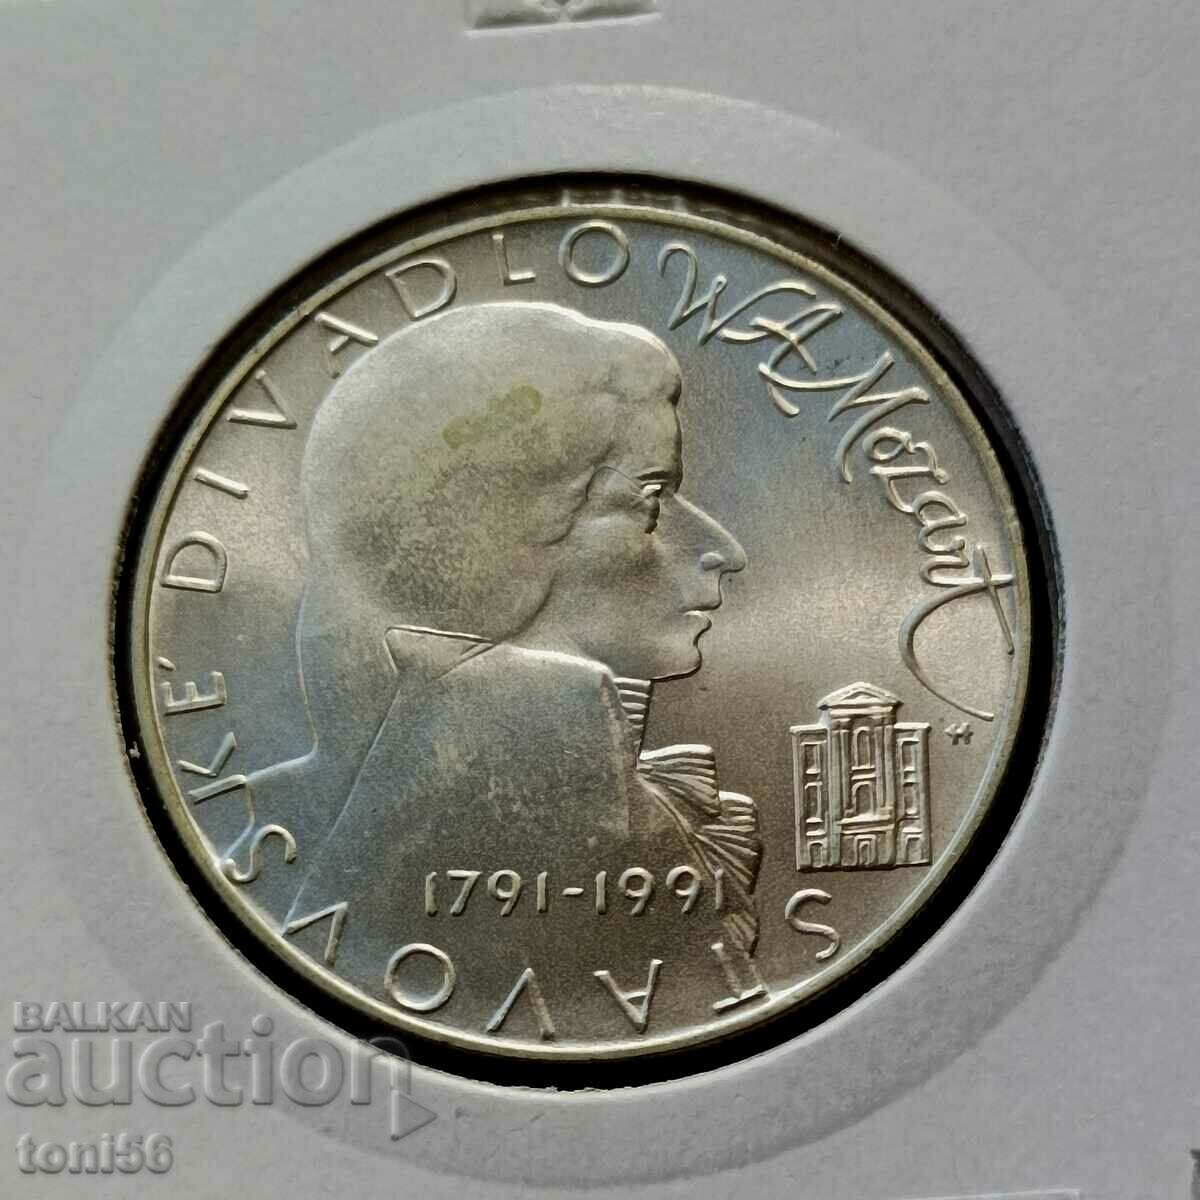 Czechoslovakia 100 kroner 1991 UNC - Silver Mozart